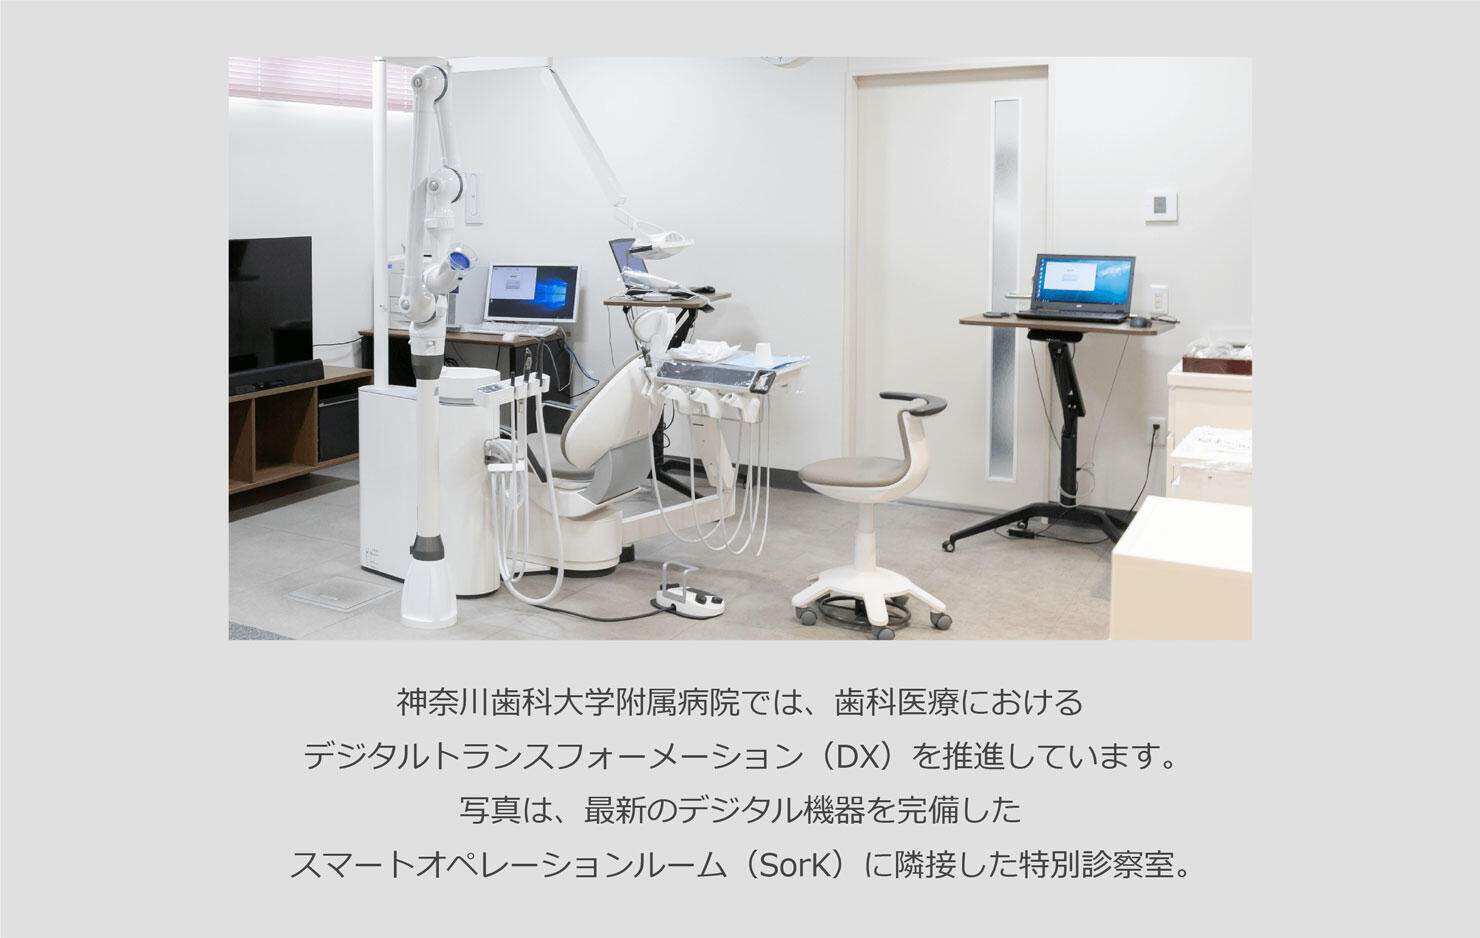 神奈川歯科大学附属病院では、歯科医療におけるデジタルトランスフォーメーション（DX）を推進しています。写真は、最新のデジタル機器を完備したスマートオペレーションルーム（SorK）に隣接した特別診察室。